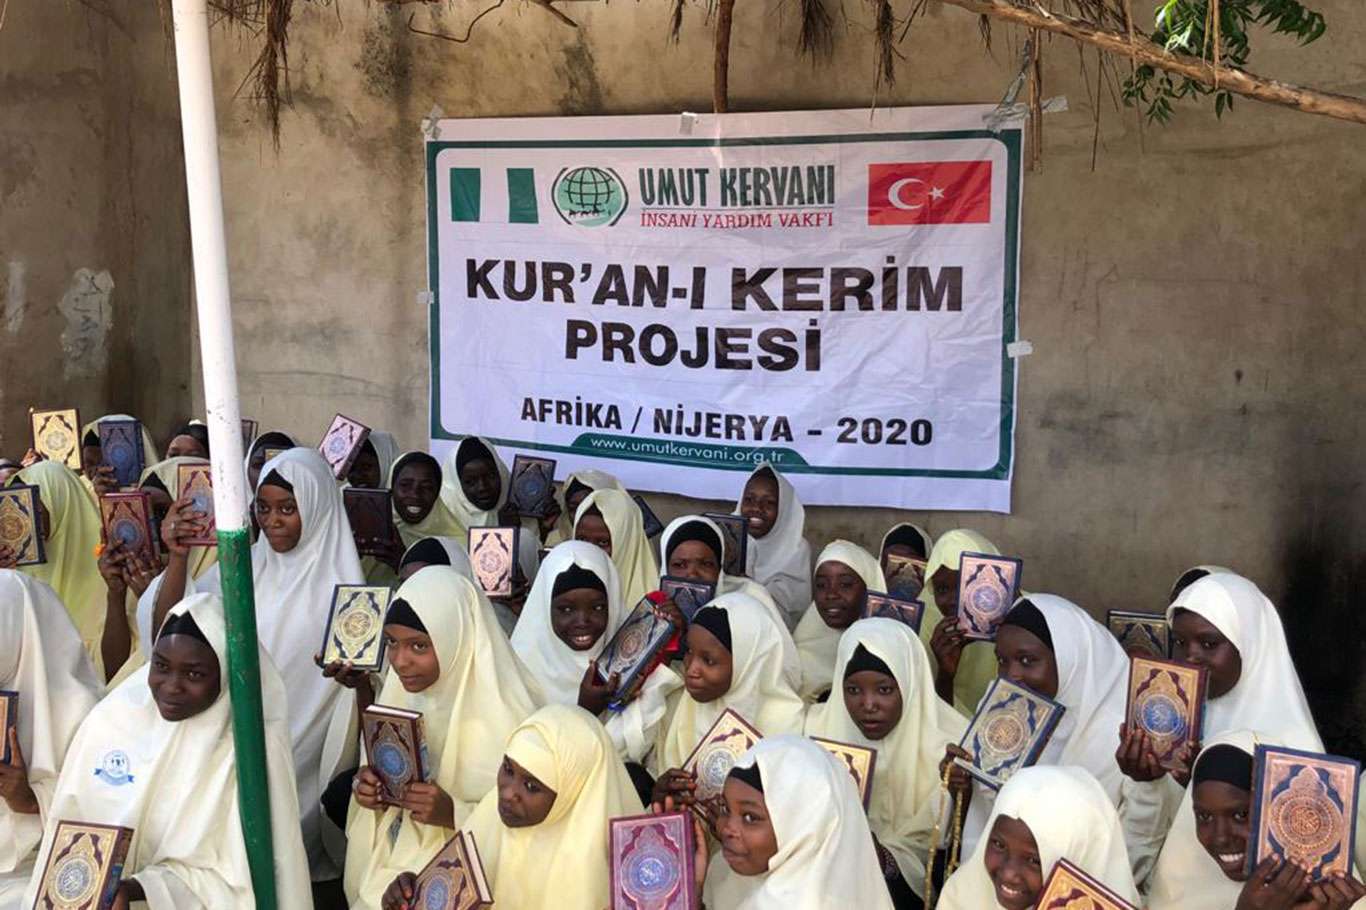 وقف کاروان امید به دانش آموزان حوزه ای در آفریقا قرآن توزیع کرد